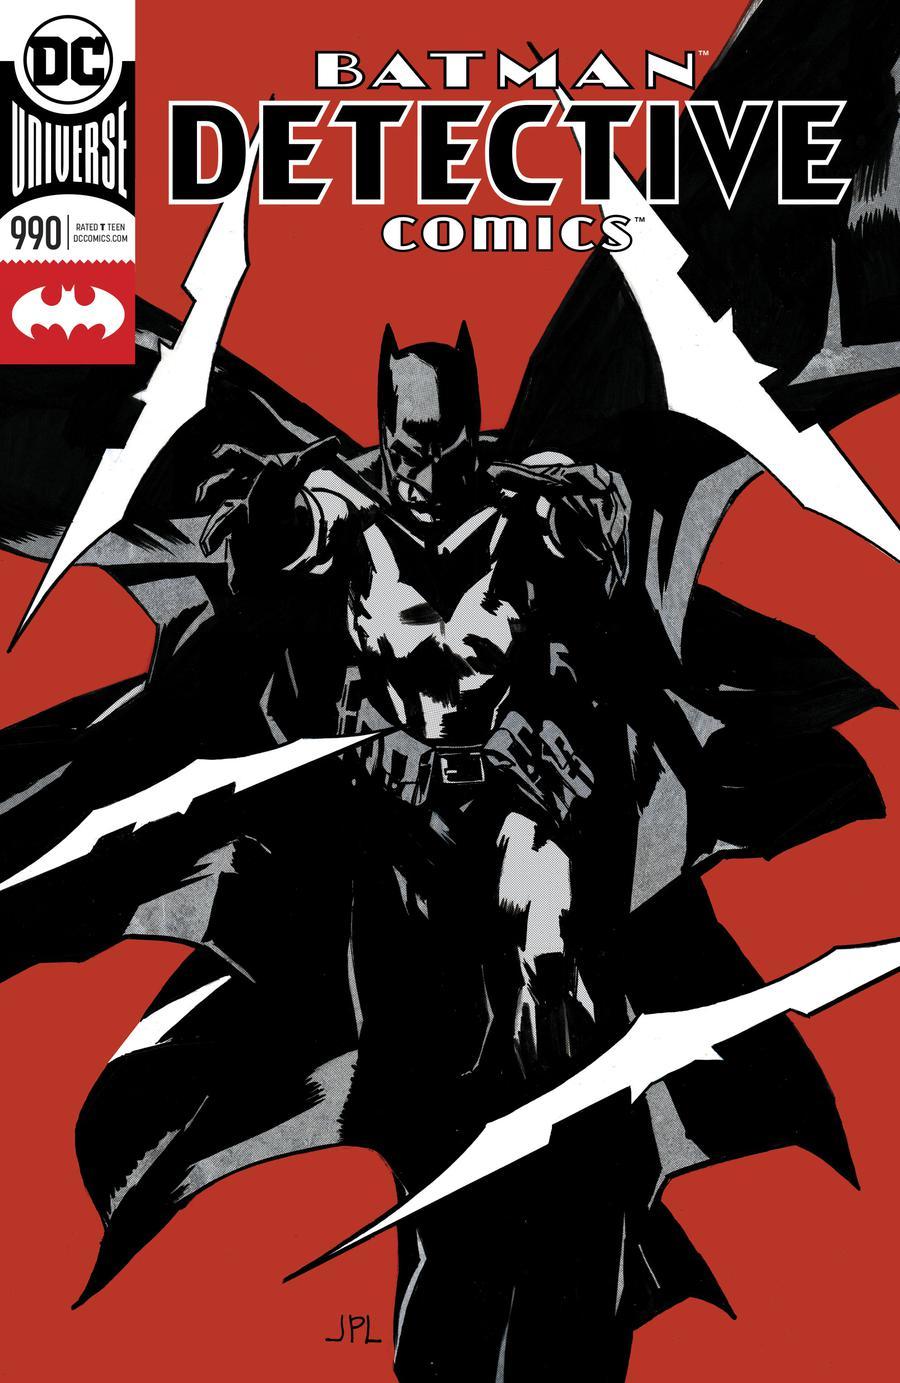 Detective Comics Vol. 2 #990